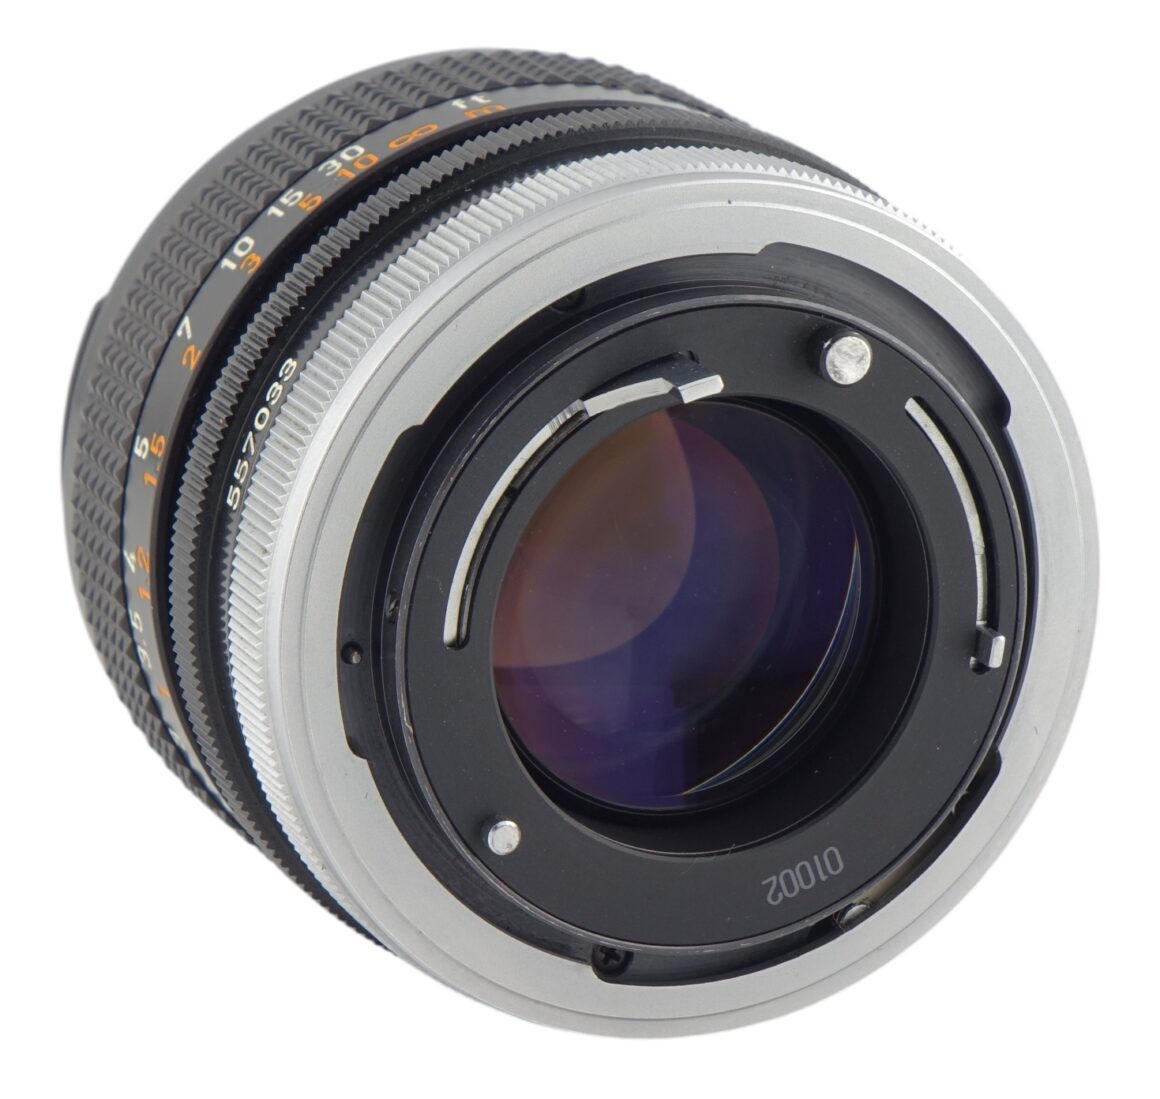 Canon FD 50mm F/1.4 S.S.C. [I] | LENS-DB.COM